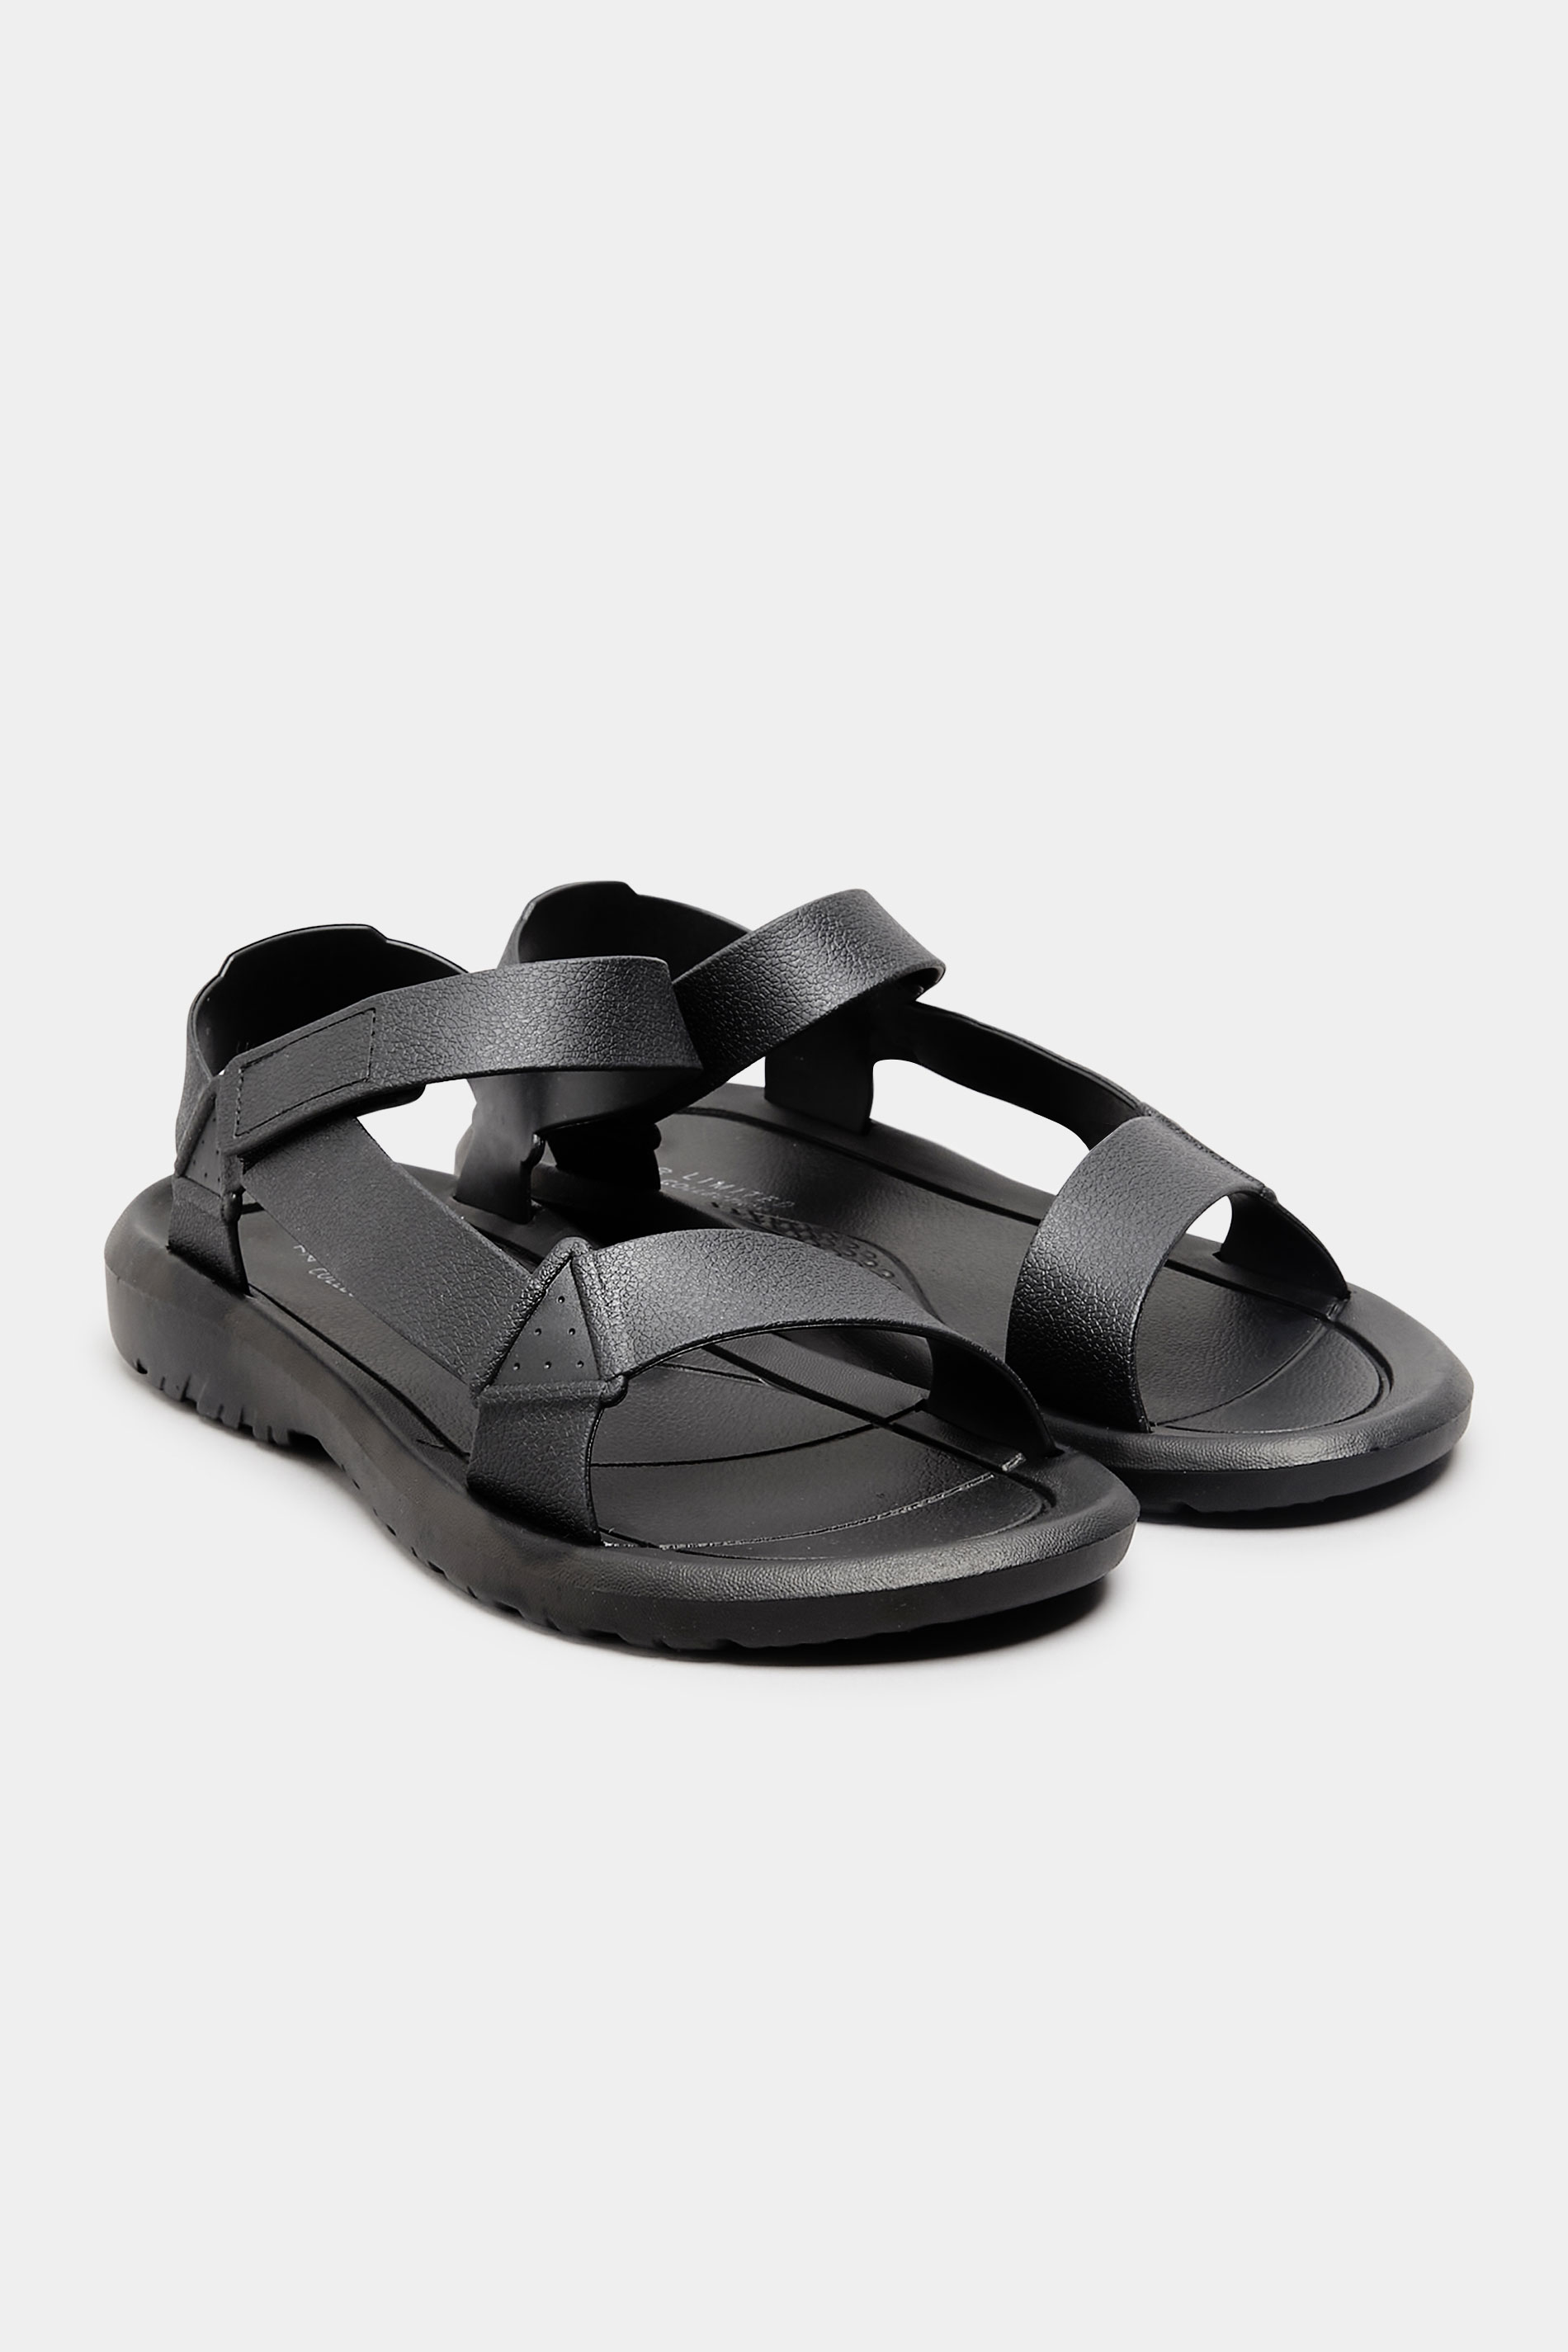 Chaussures Pieds Larges Sandales Pieds Larges | LIMITED COLLECTION - Sandales Noires à Scratch Pieds Larges E - RO11101